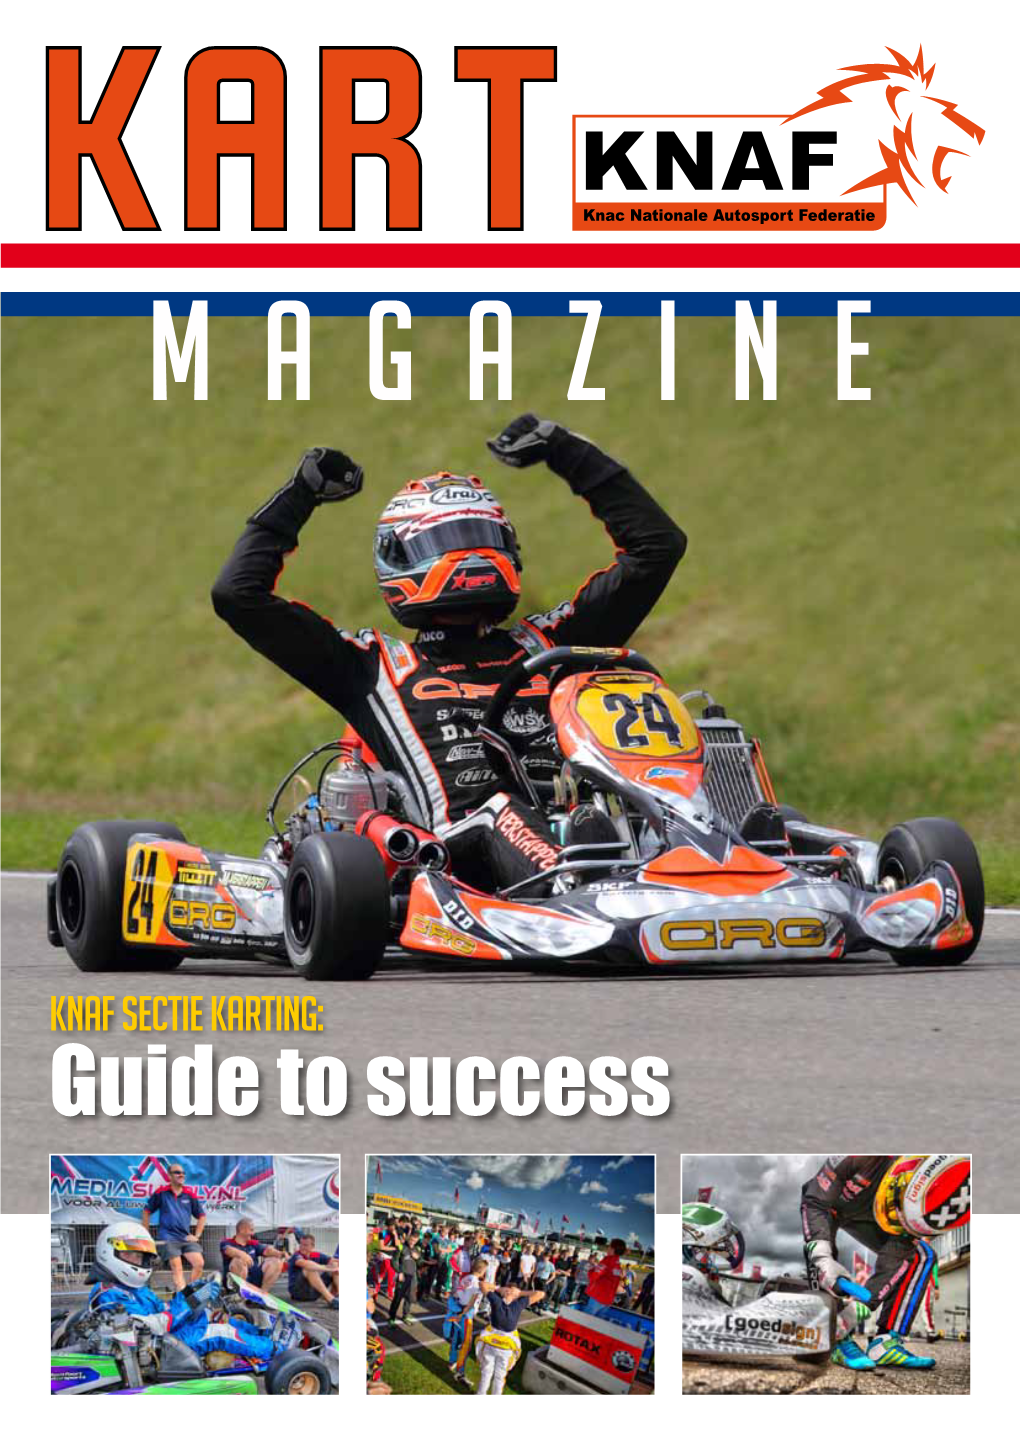 KNAF Sectie Karting: Guide to Success Voorwoord De Weg Naar Succes